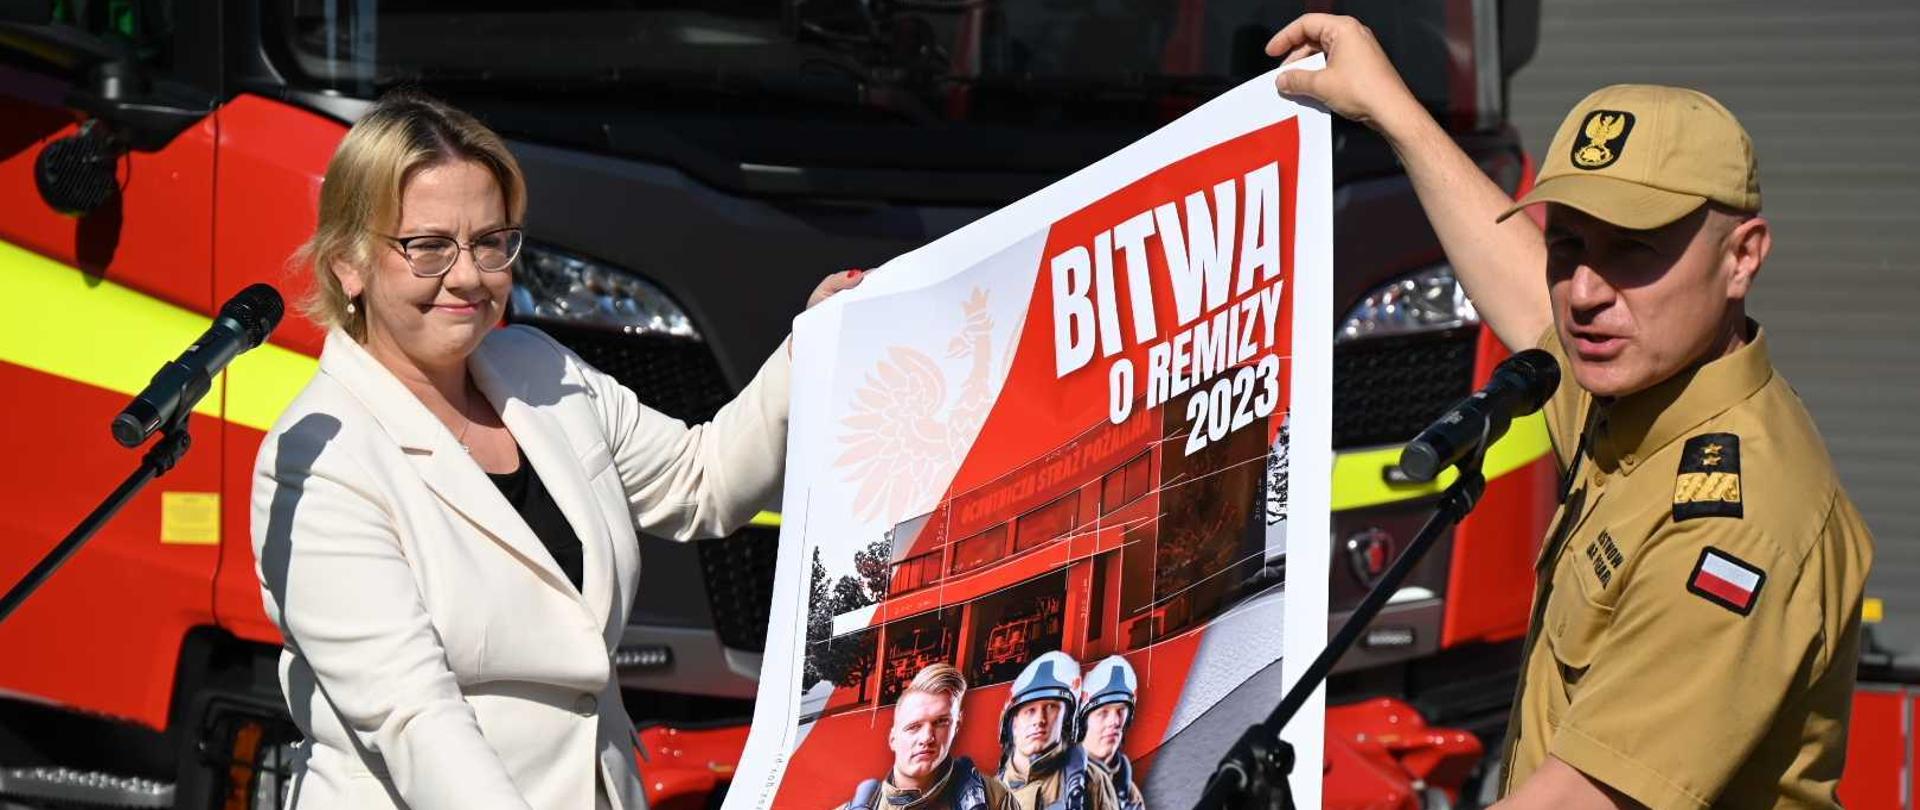 Komendant główny psp generał brygadier andrzej bartkowiak oraz Anna moskwa Minister klimatu i środowiska Polski przedstawiają plakat z nową akcją bitwa o remizy , oboje stoją przed mikrofonem na tle wozu bojowego